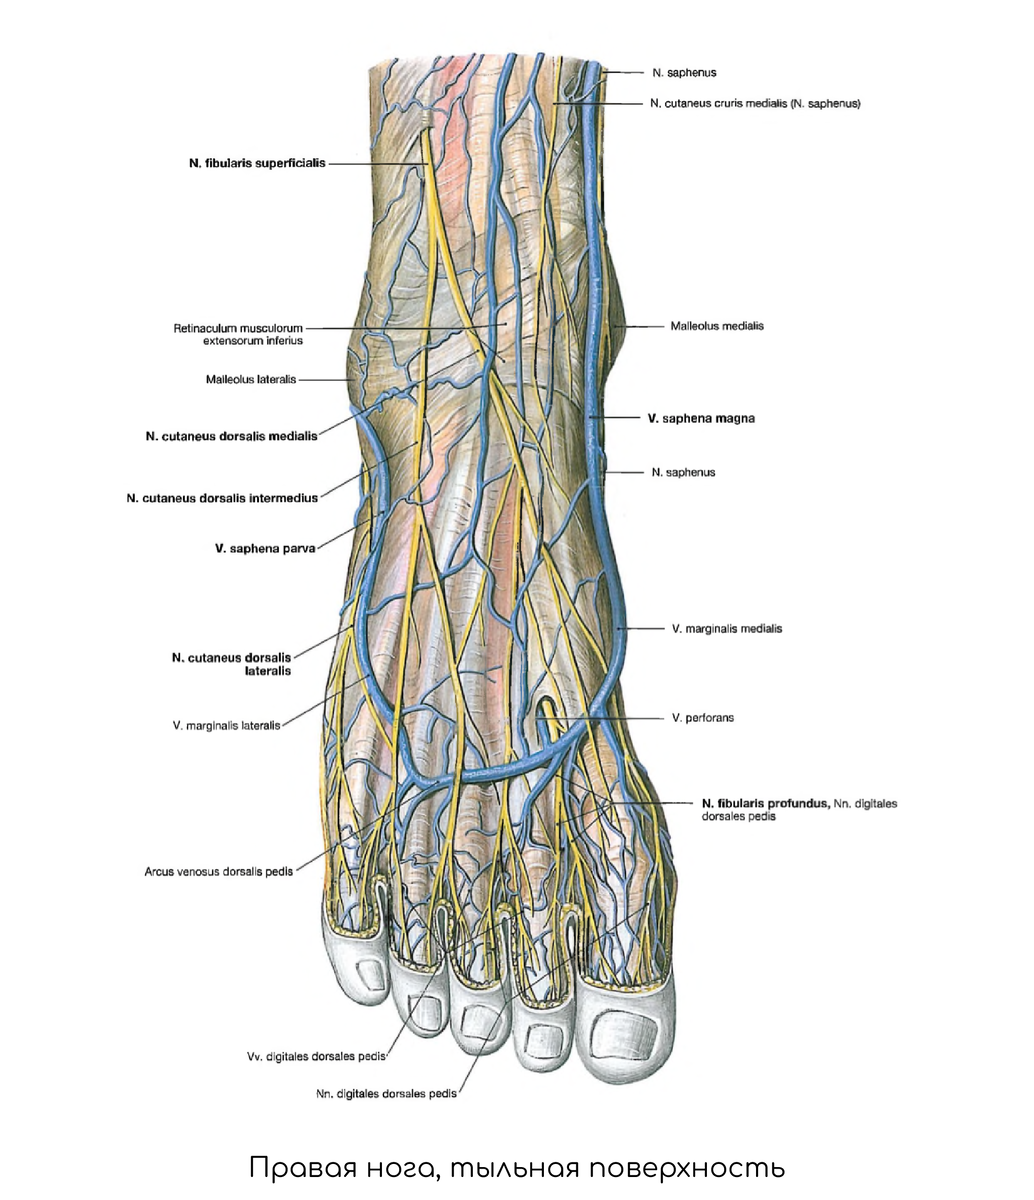 Основные артерии стопы. Артерия дорсалис педис проекция. Тыльная артериальная дуга стопы.